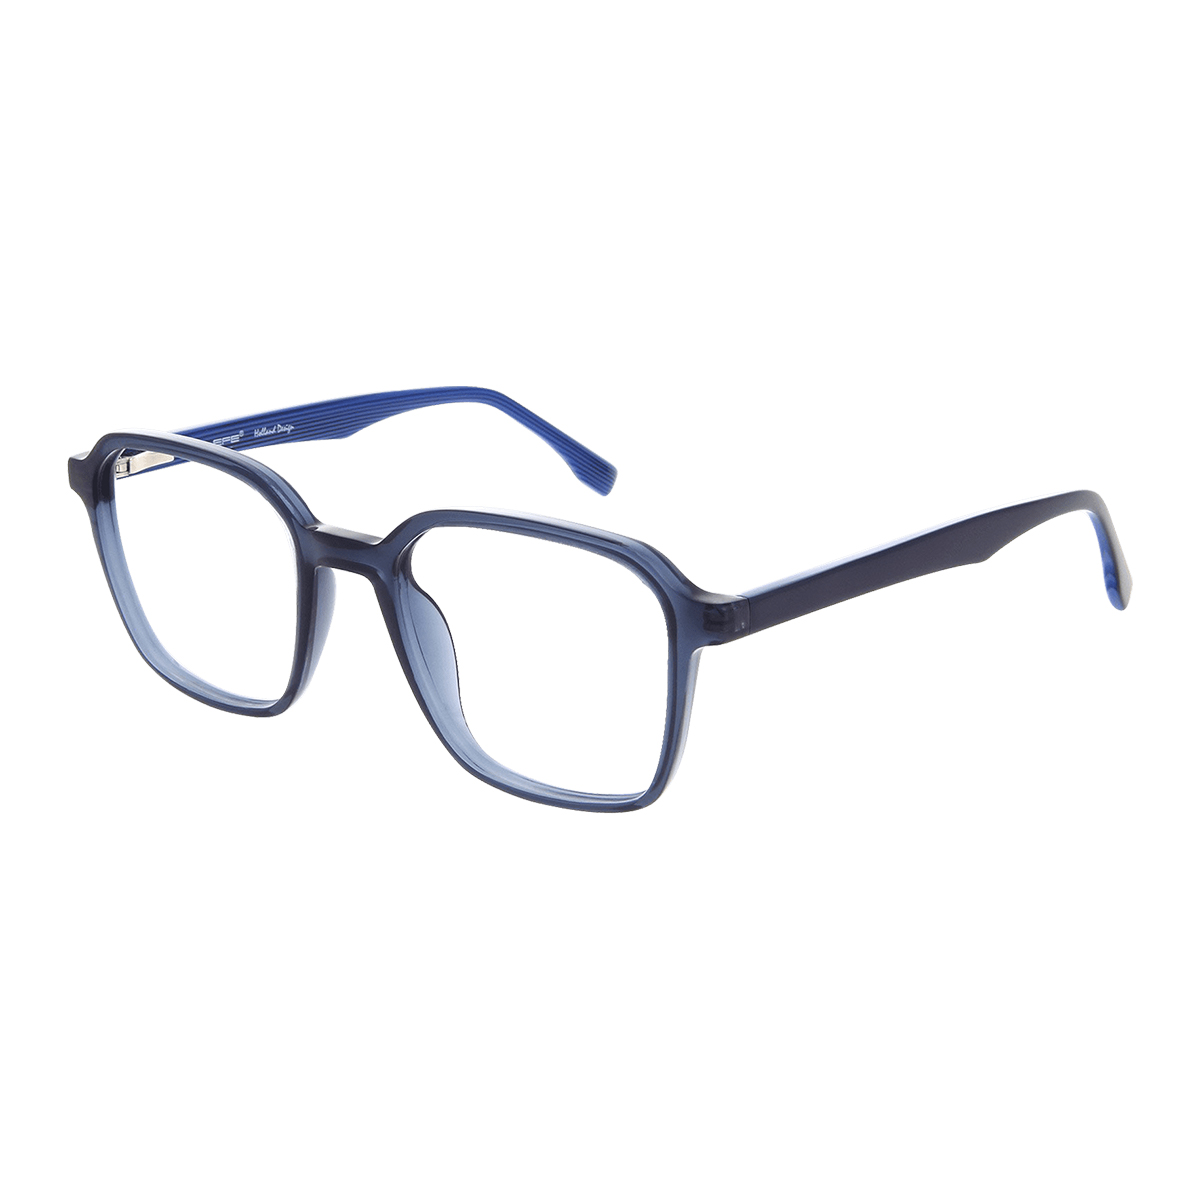 Syme - Rectangle Blue Reading Glasses for Men & Women